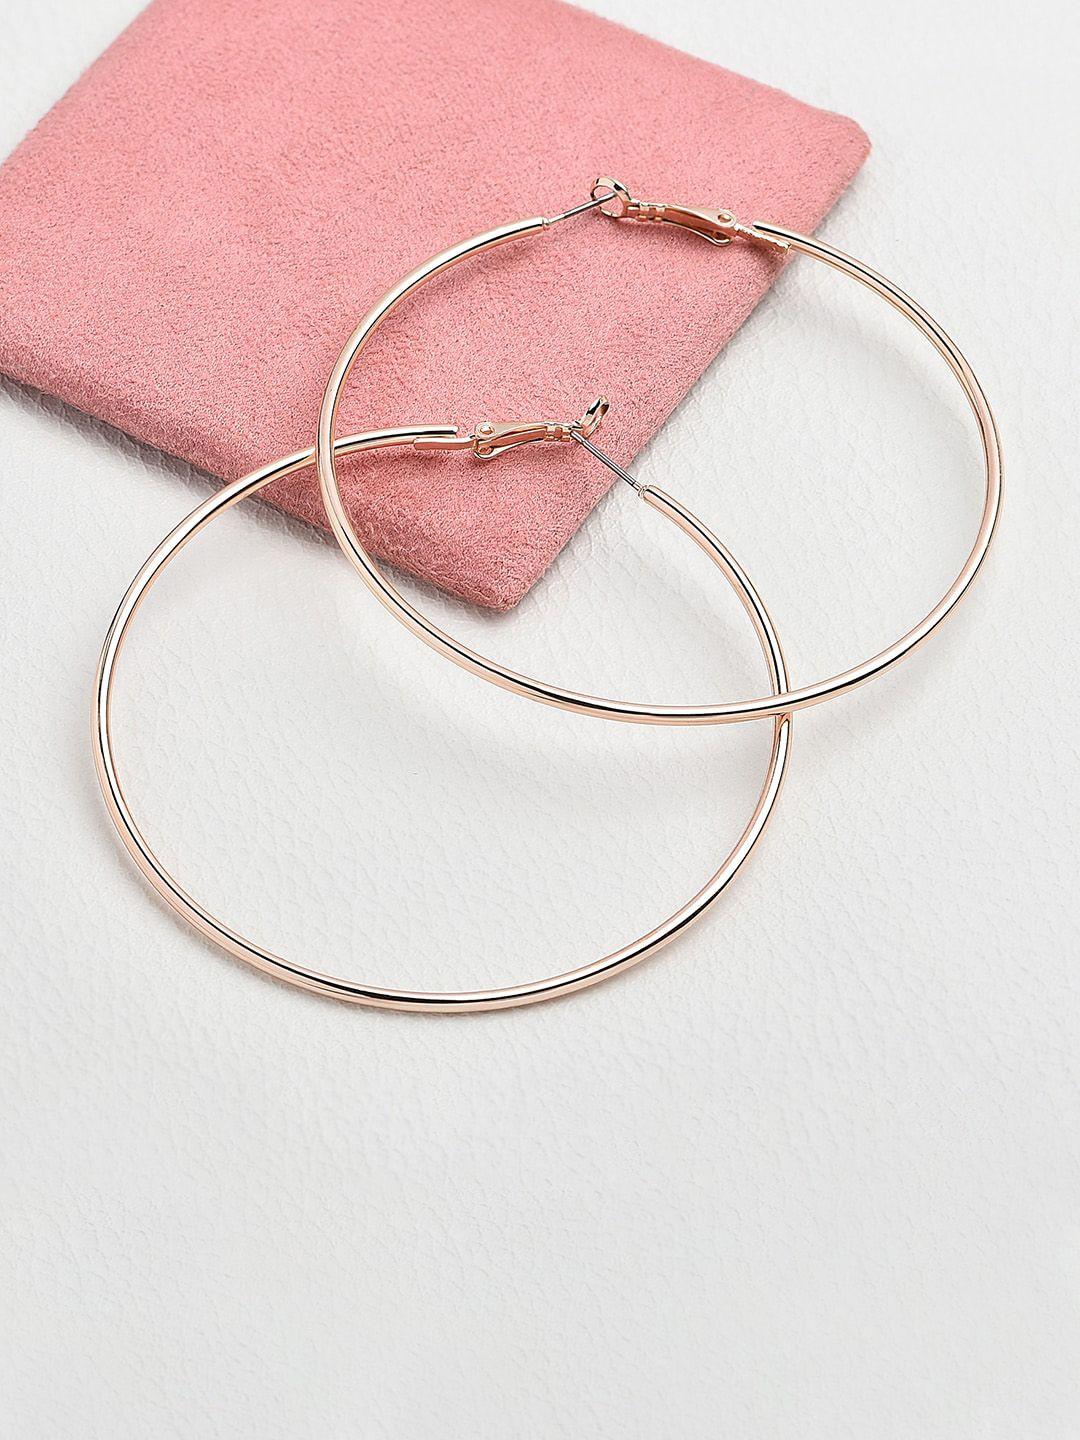 accessorize london women rose gold mid size simple hoop earring